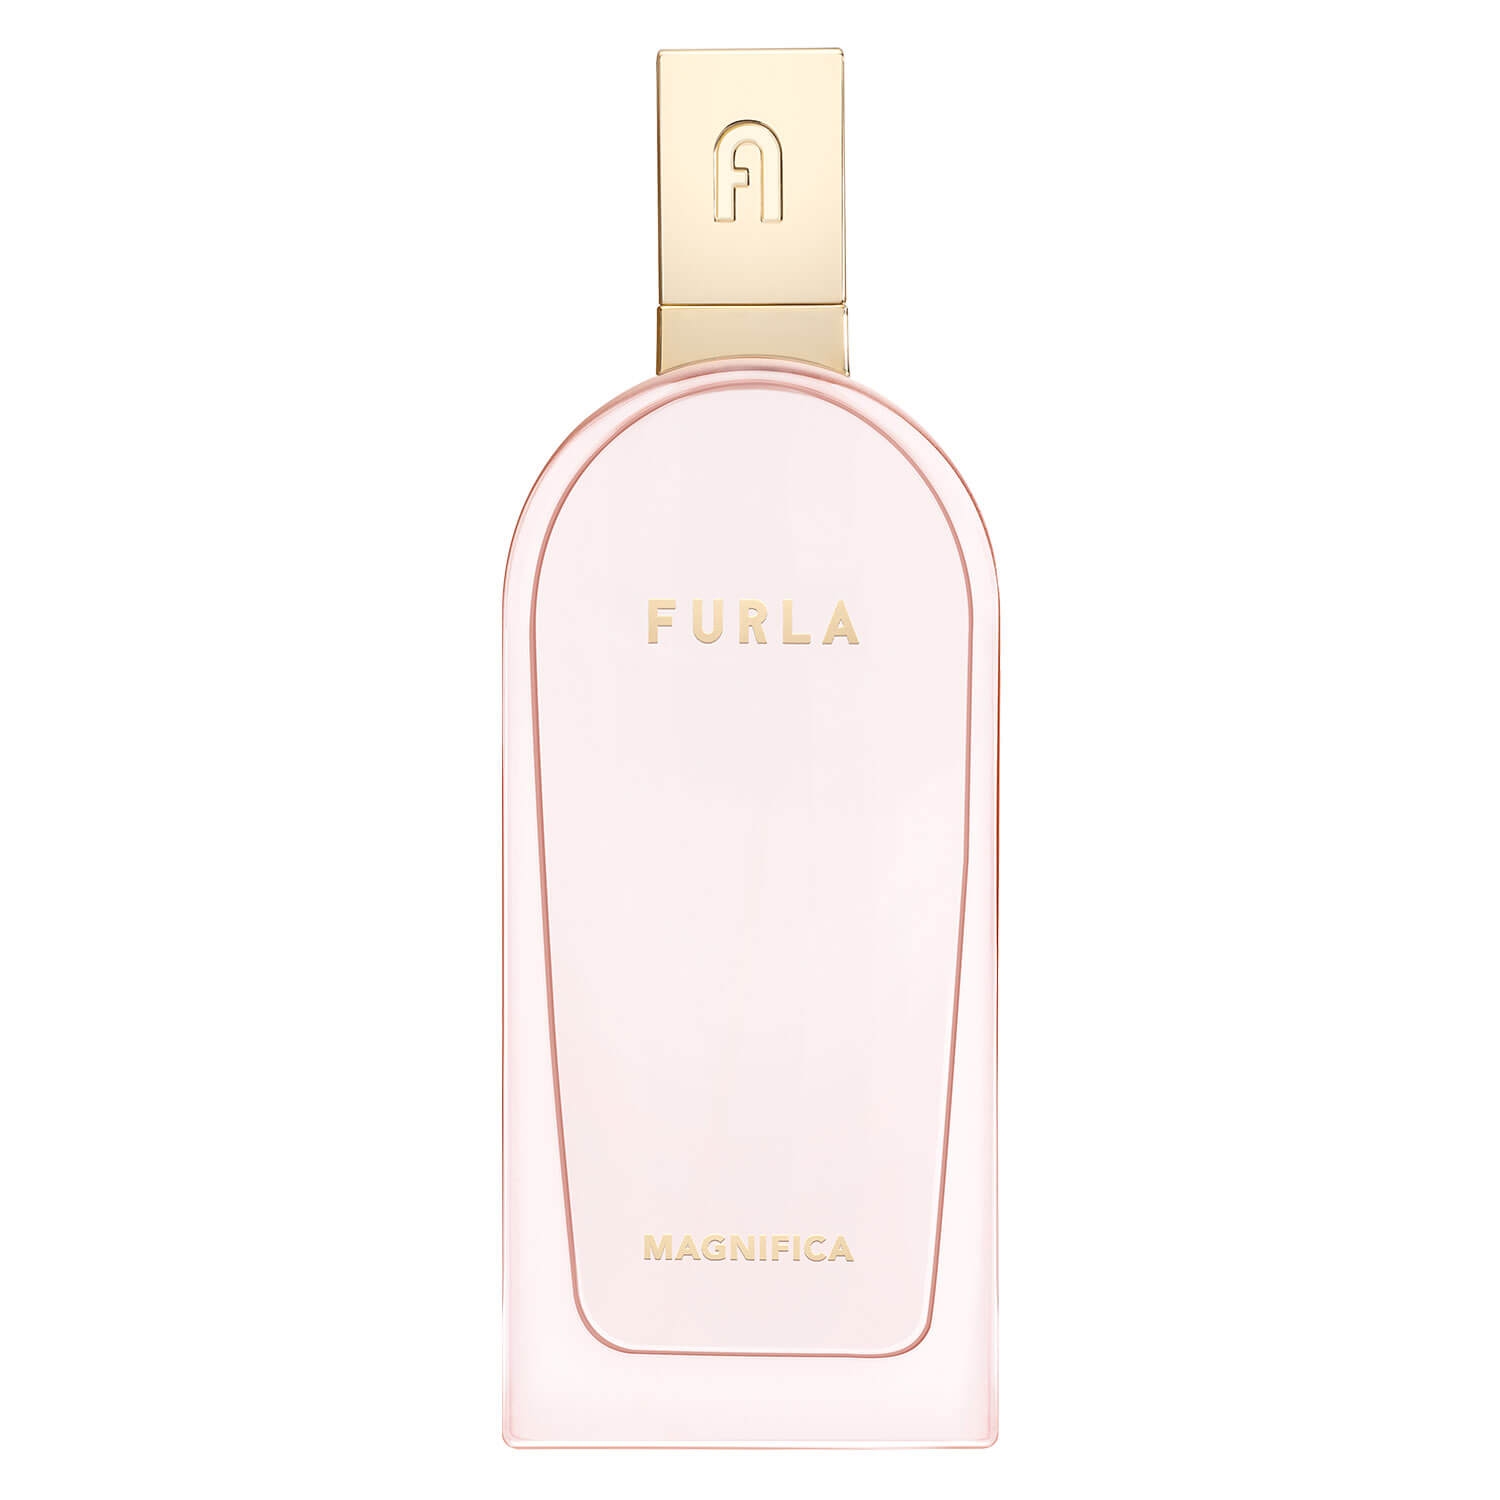 Product image from FURLA - Magnifica Eau de Parfum